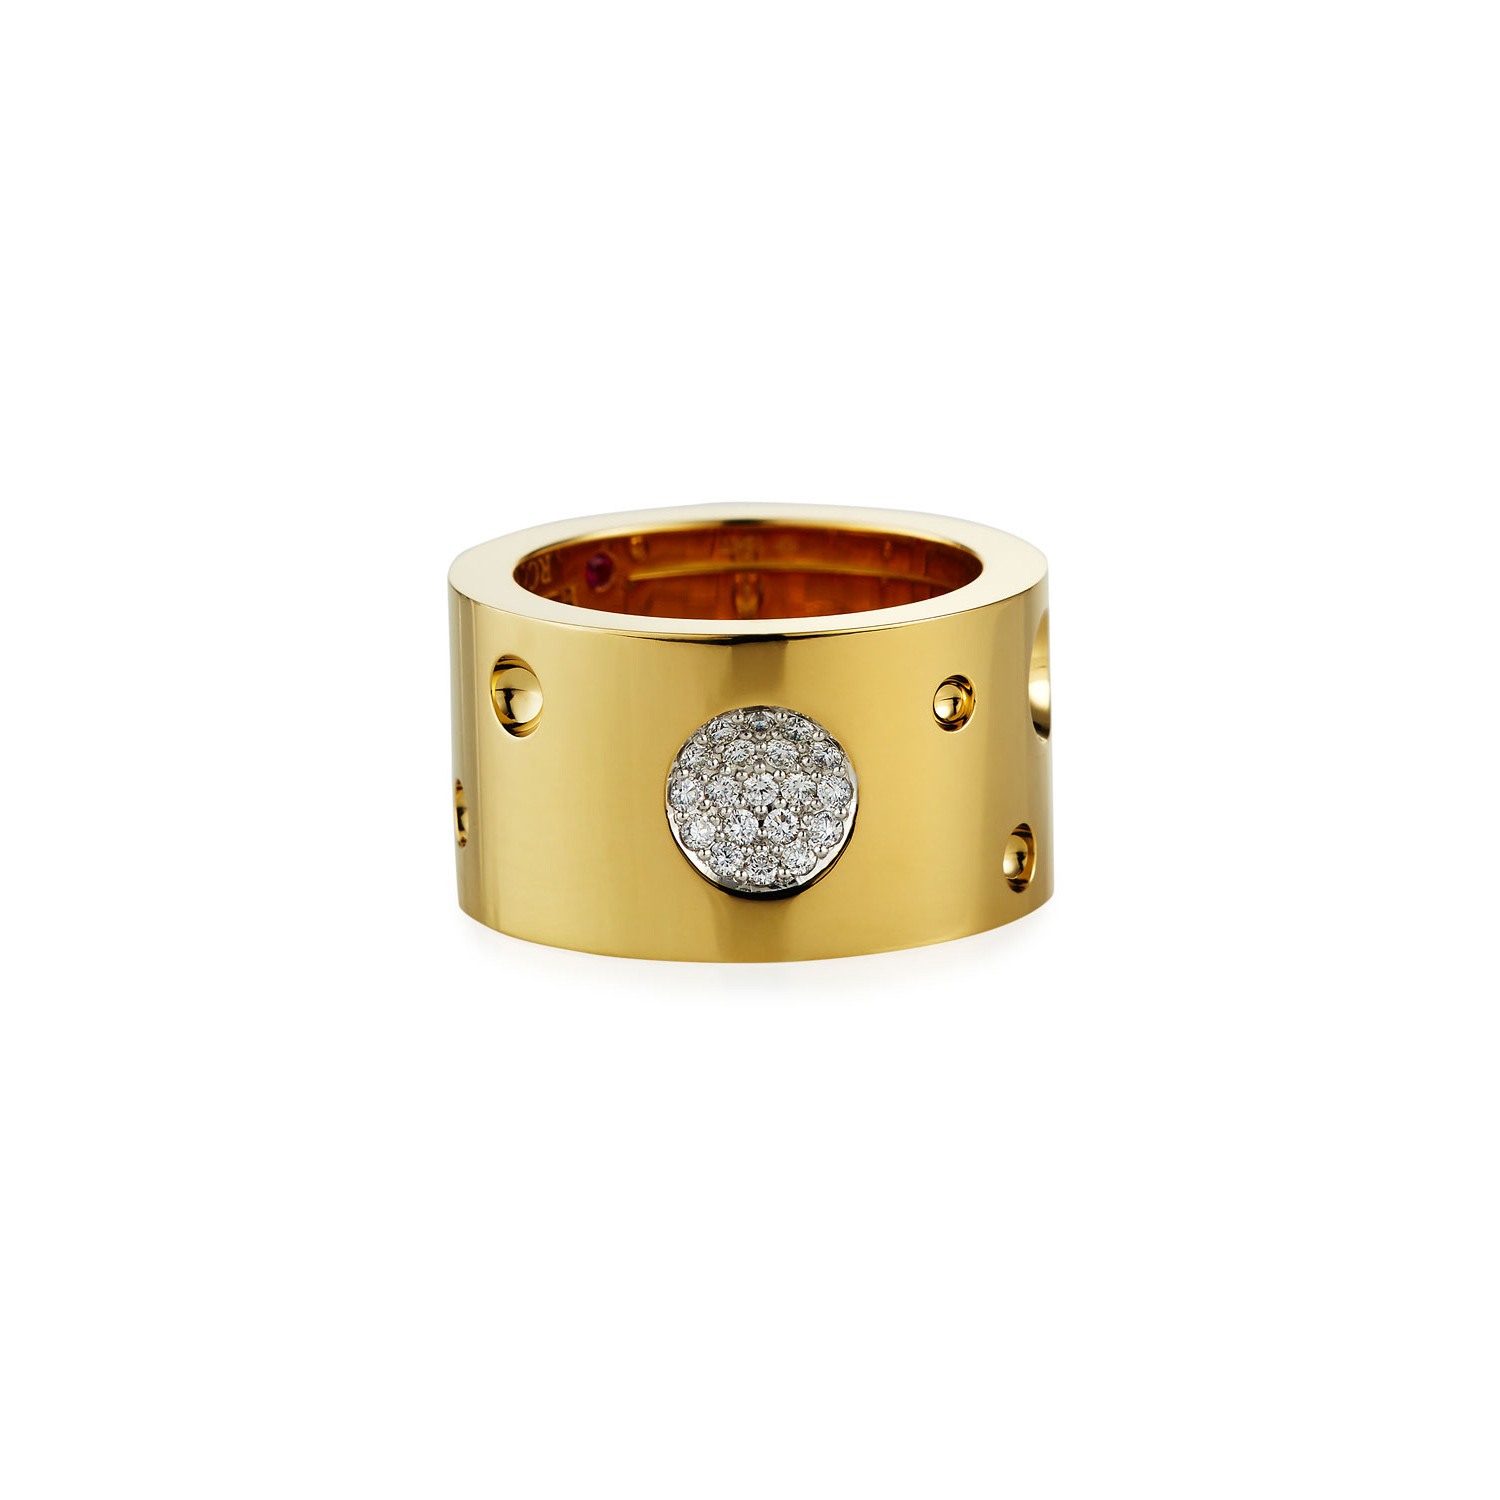 Großhandel OEM/ODM Schmuck Custom 18k Gold & Diamant Ring Damen Feinschmuck Designer